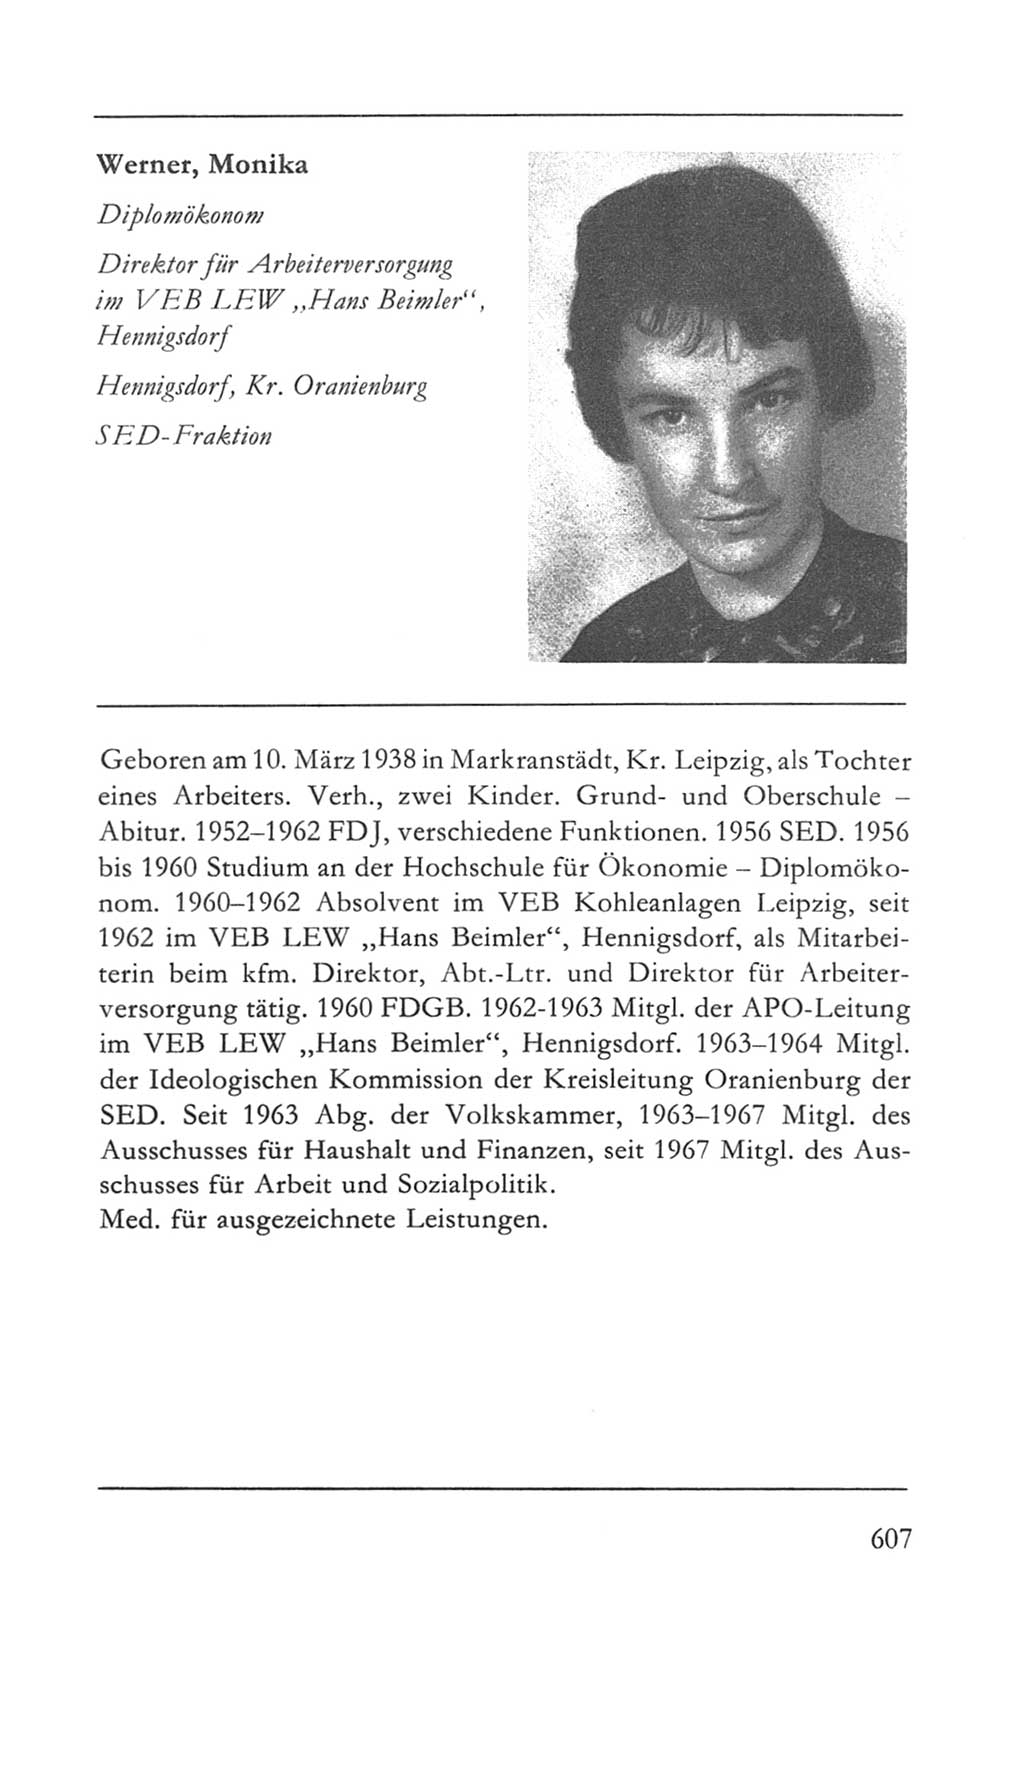 Volkskammer (VK) der Deutschen Demokratischen Republik (DDR) 5. Wahlperiode 1967-1971, Seite 607 (VK. DDR 5. WP. 1967-1971, S. 607)